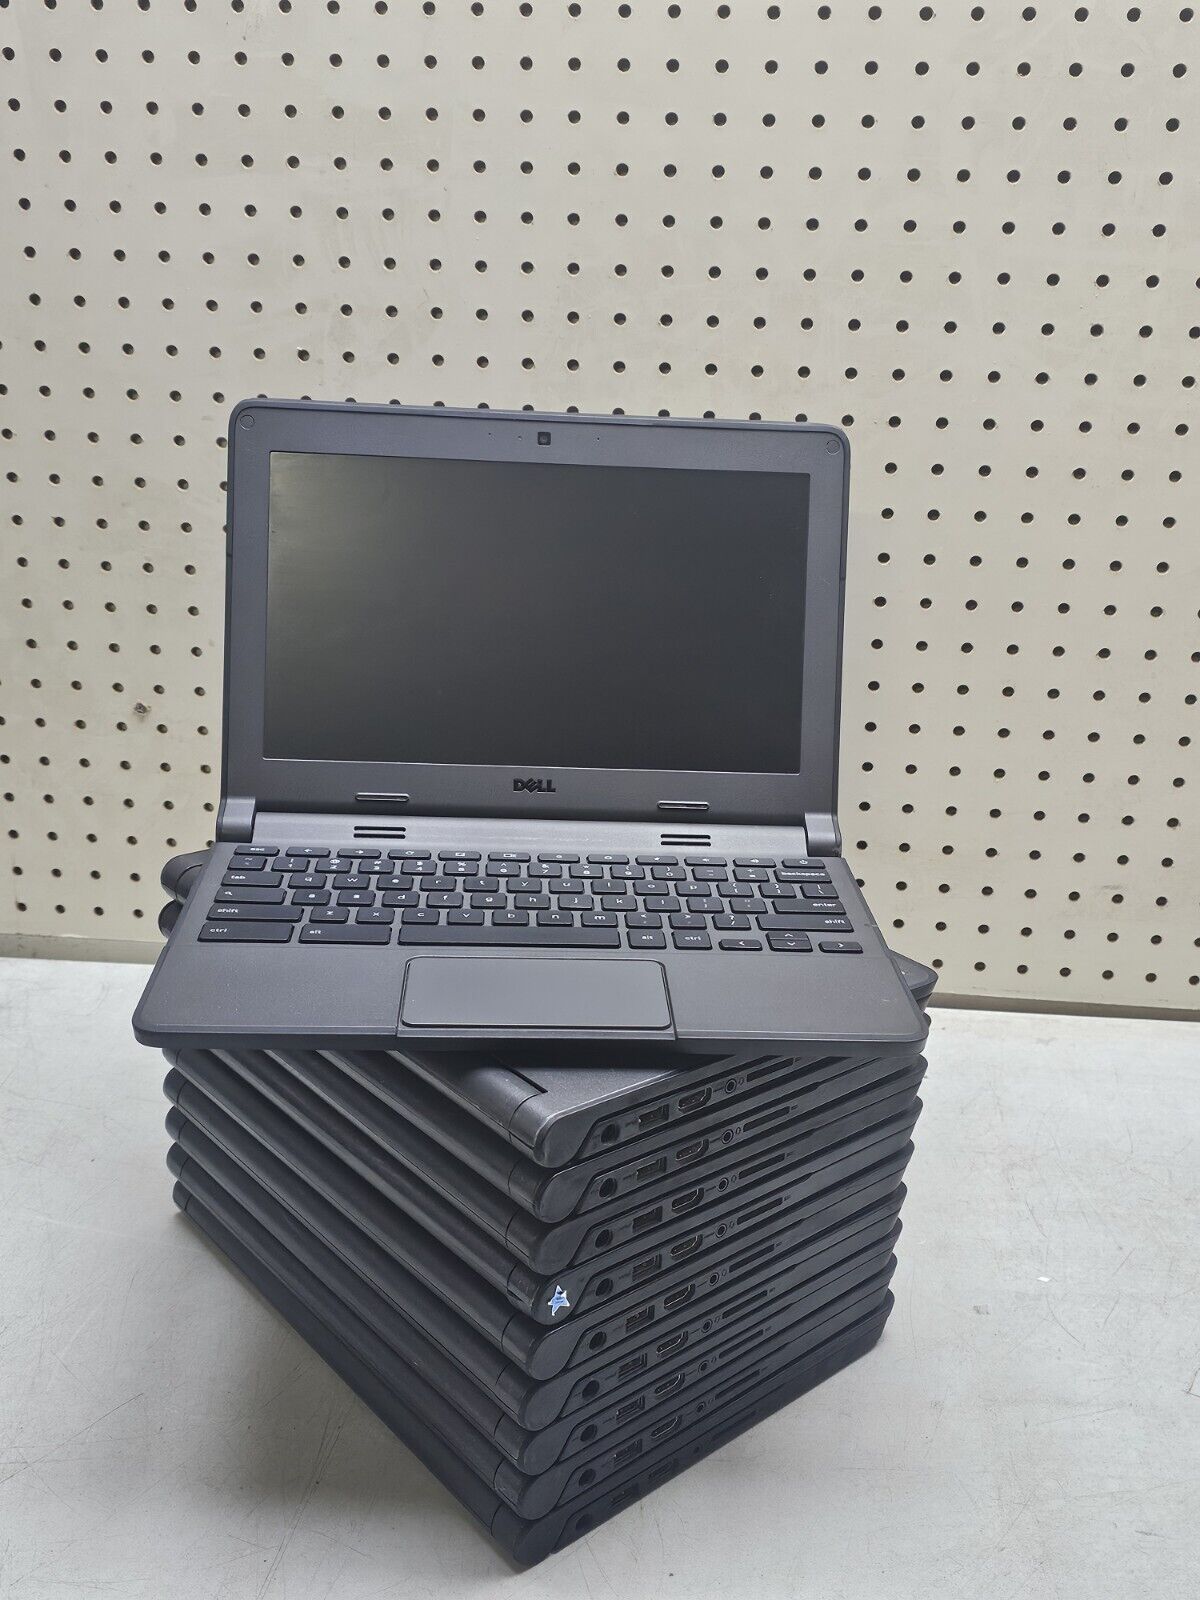 Lot of Ten (10) Dell Chromebook 11 P22T Laptop - Intel Celeron N2840 - READ